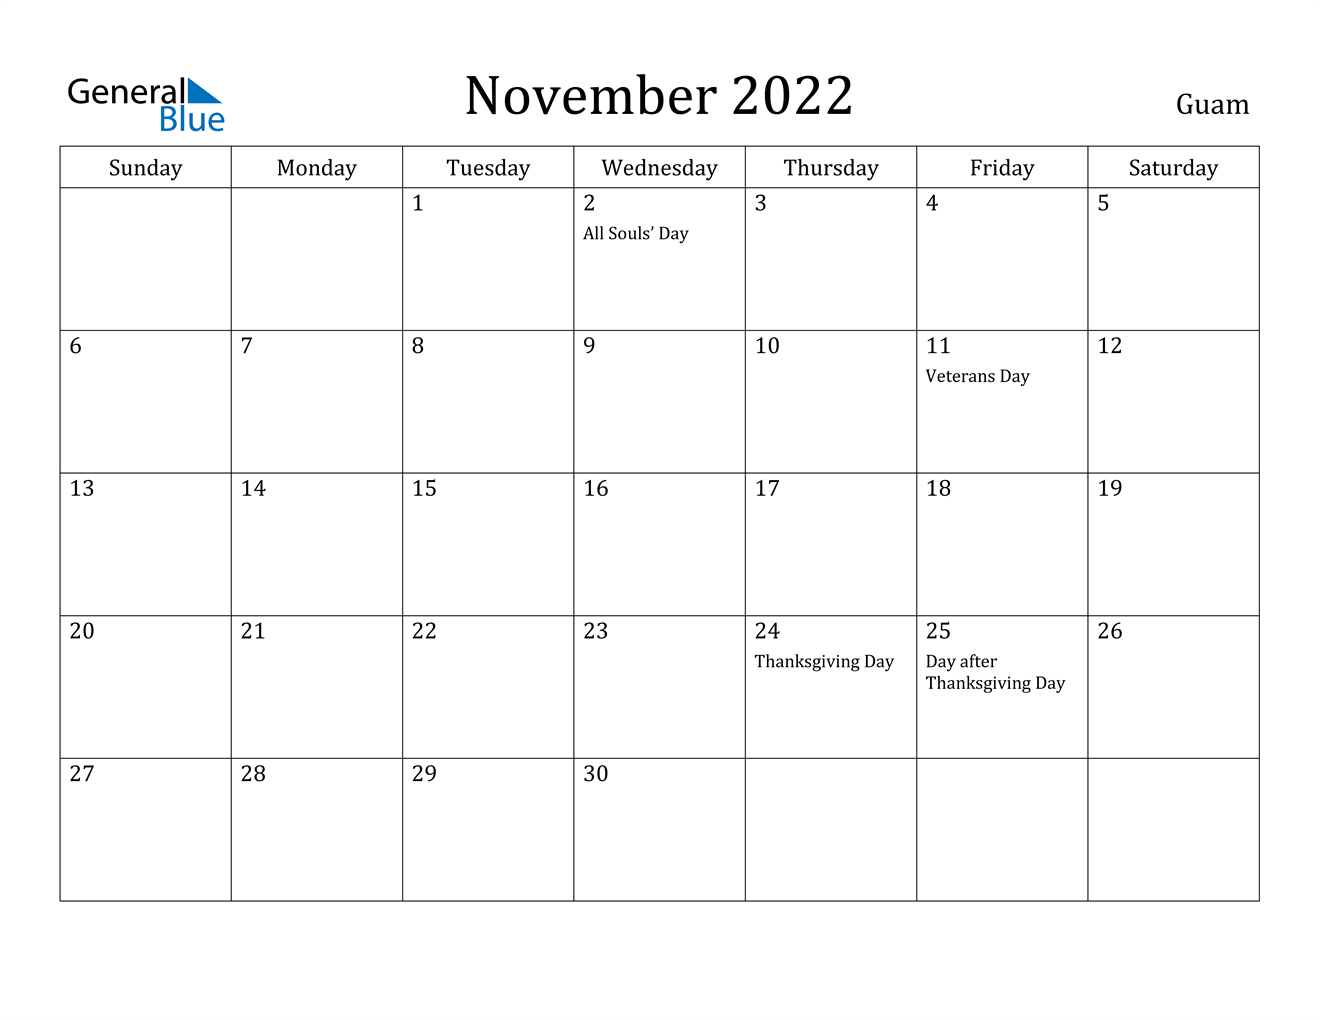 November 2022 Calendar - Guam  November To January 2022 Calendar